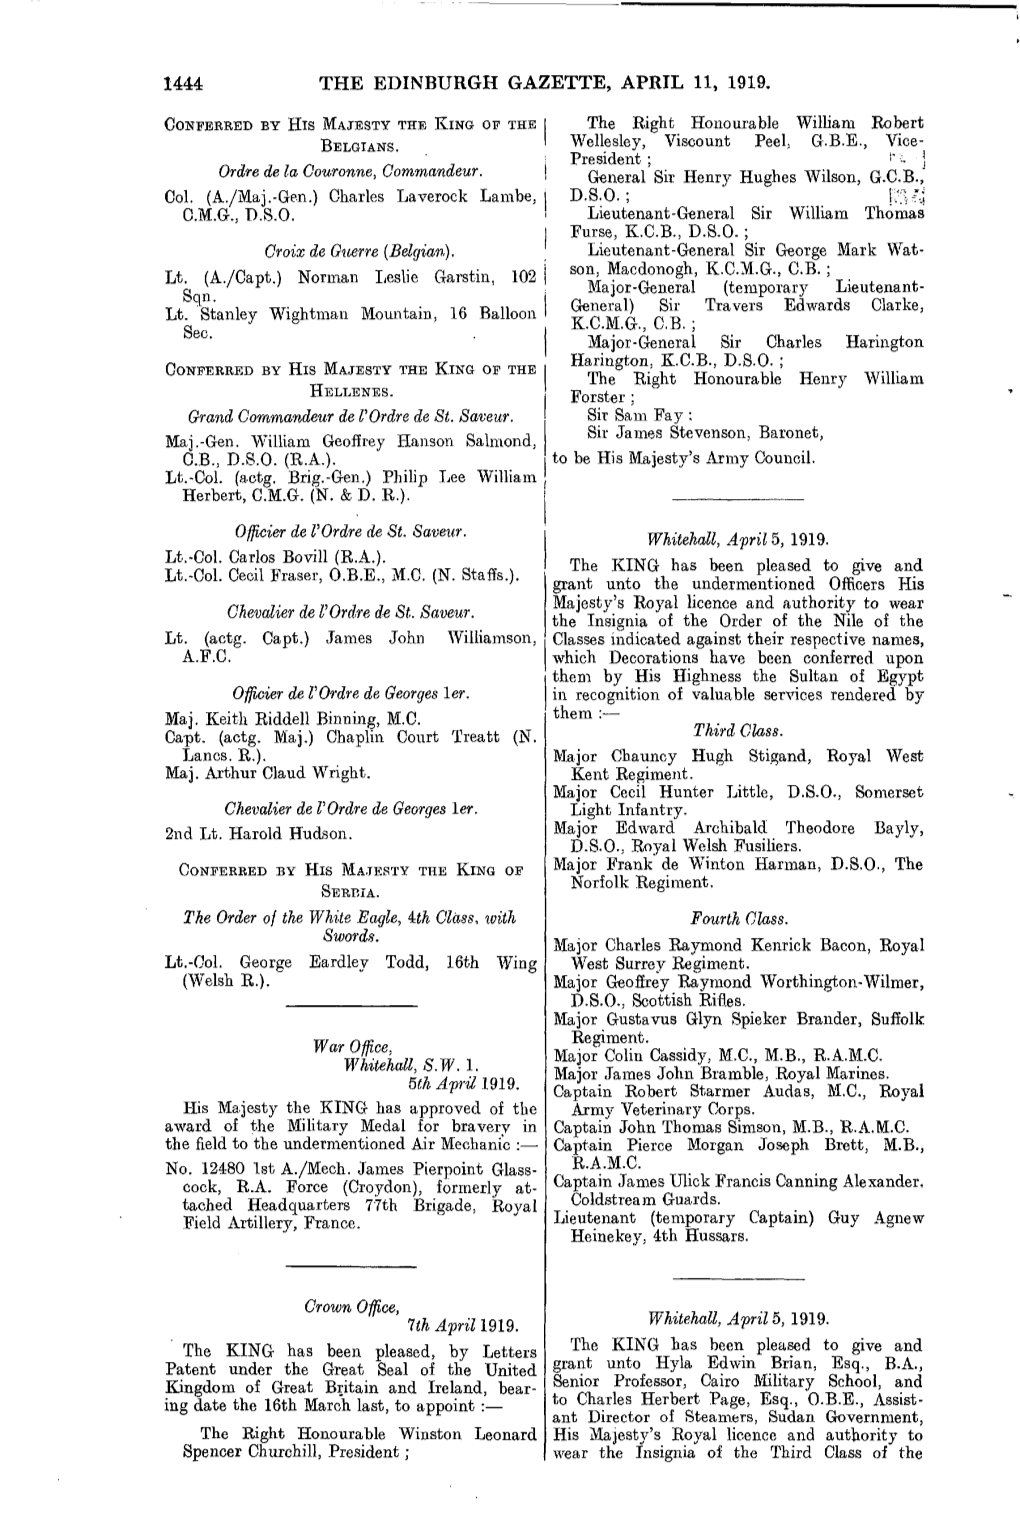 1444 the Edinburgh Gazette, April 11, 1919